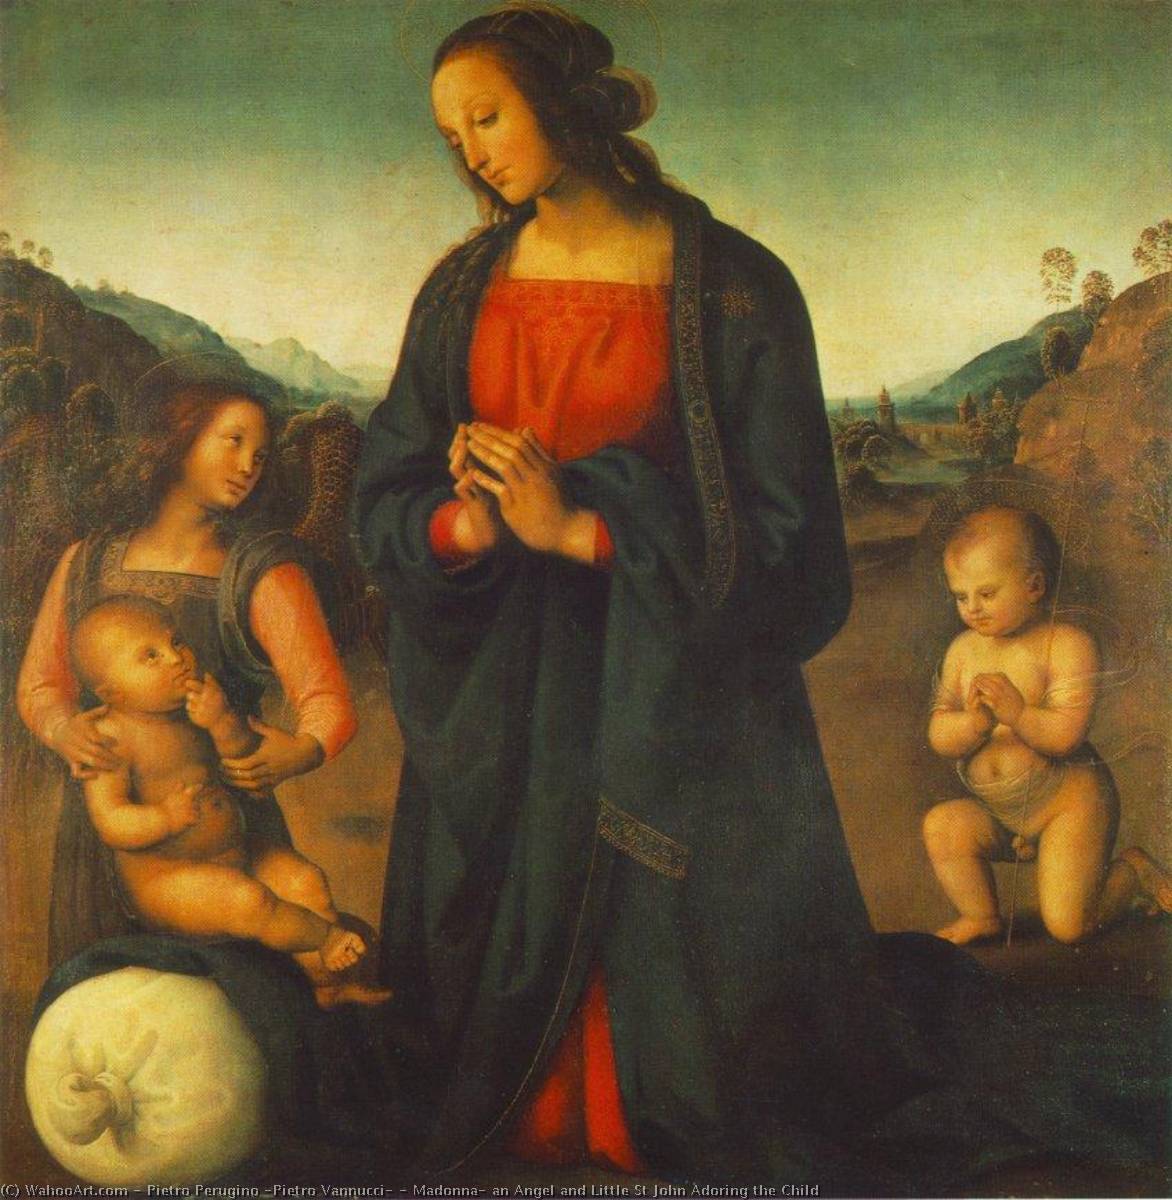 Achat Réplique De Peinture Madonna, un ange et Little St John Adoring the Child, 1500 de Pietro Perugino (Pietro Vannucci) (1446-1523) | ArtsDot.com